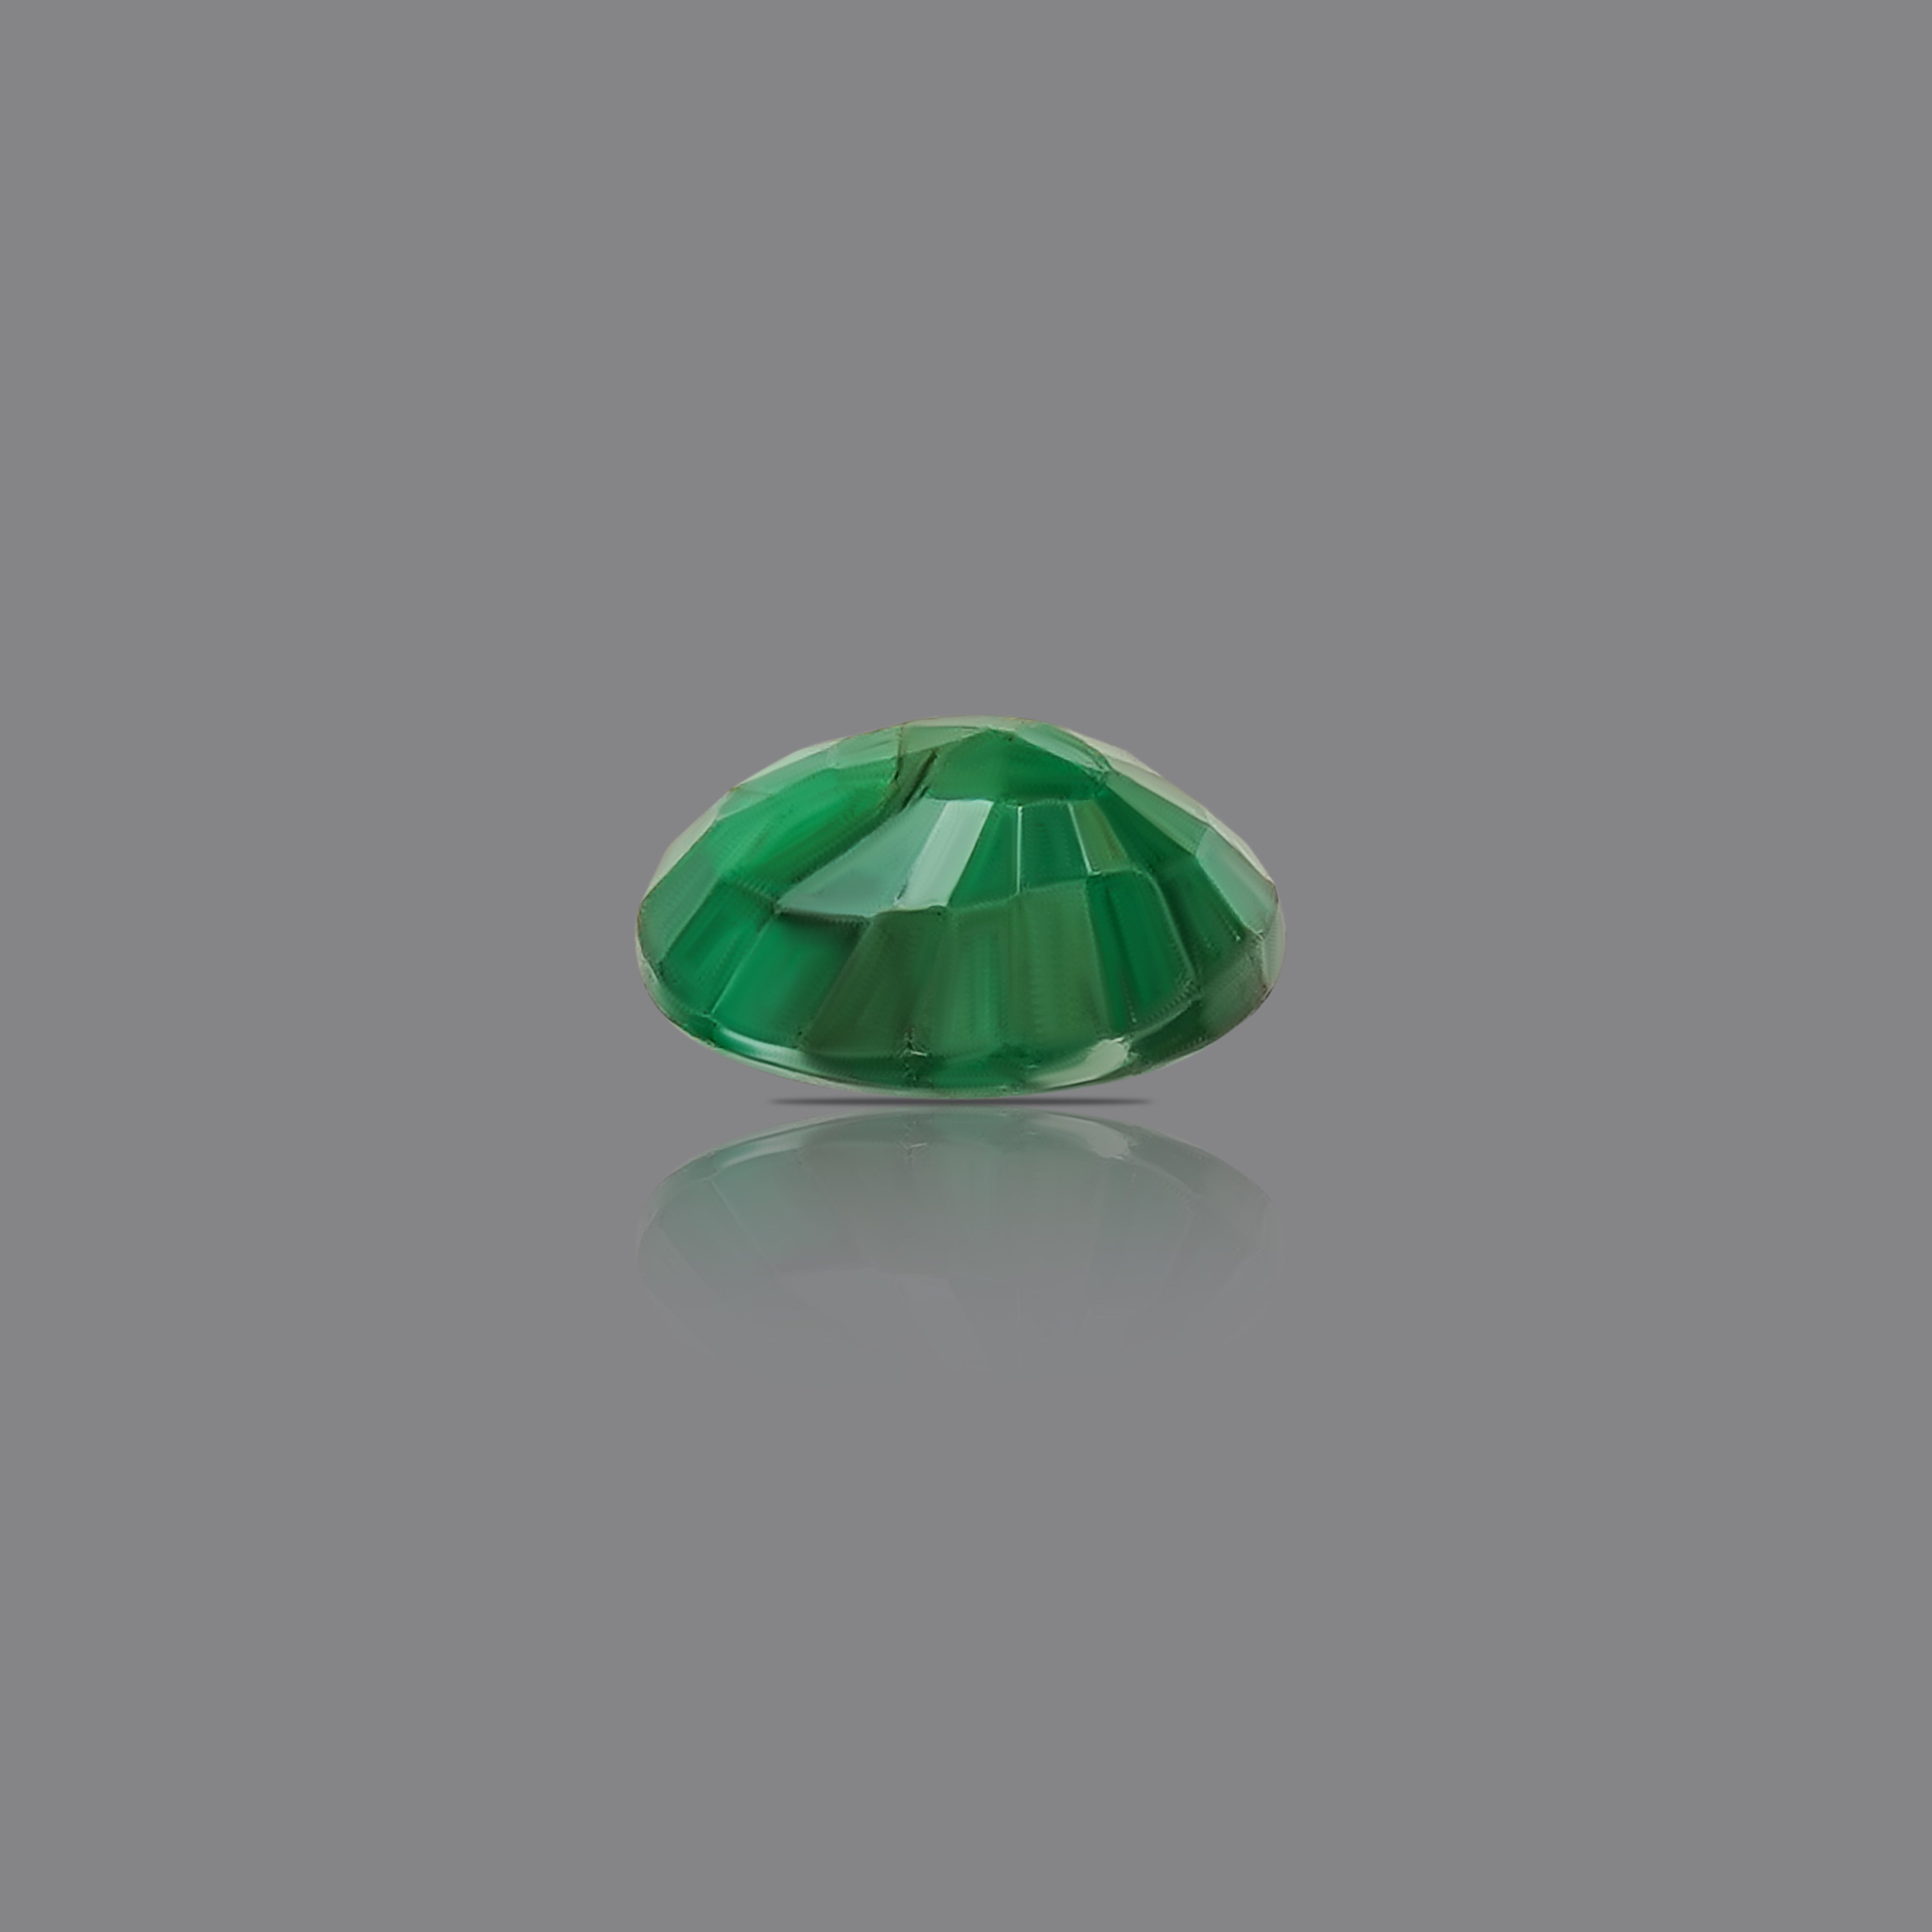 Panna- Emerald  (3.47 Carat)